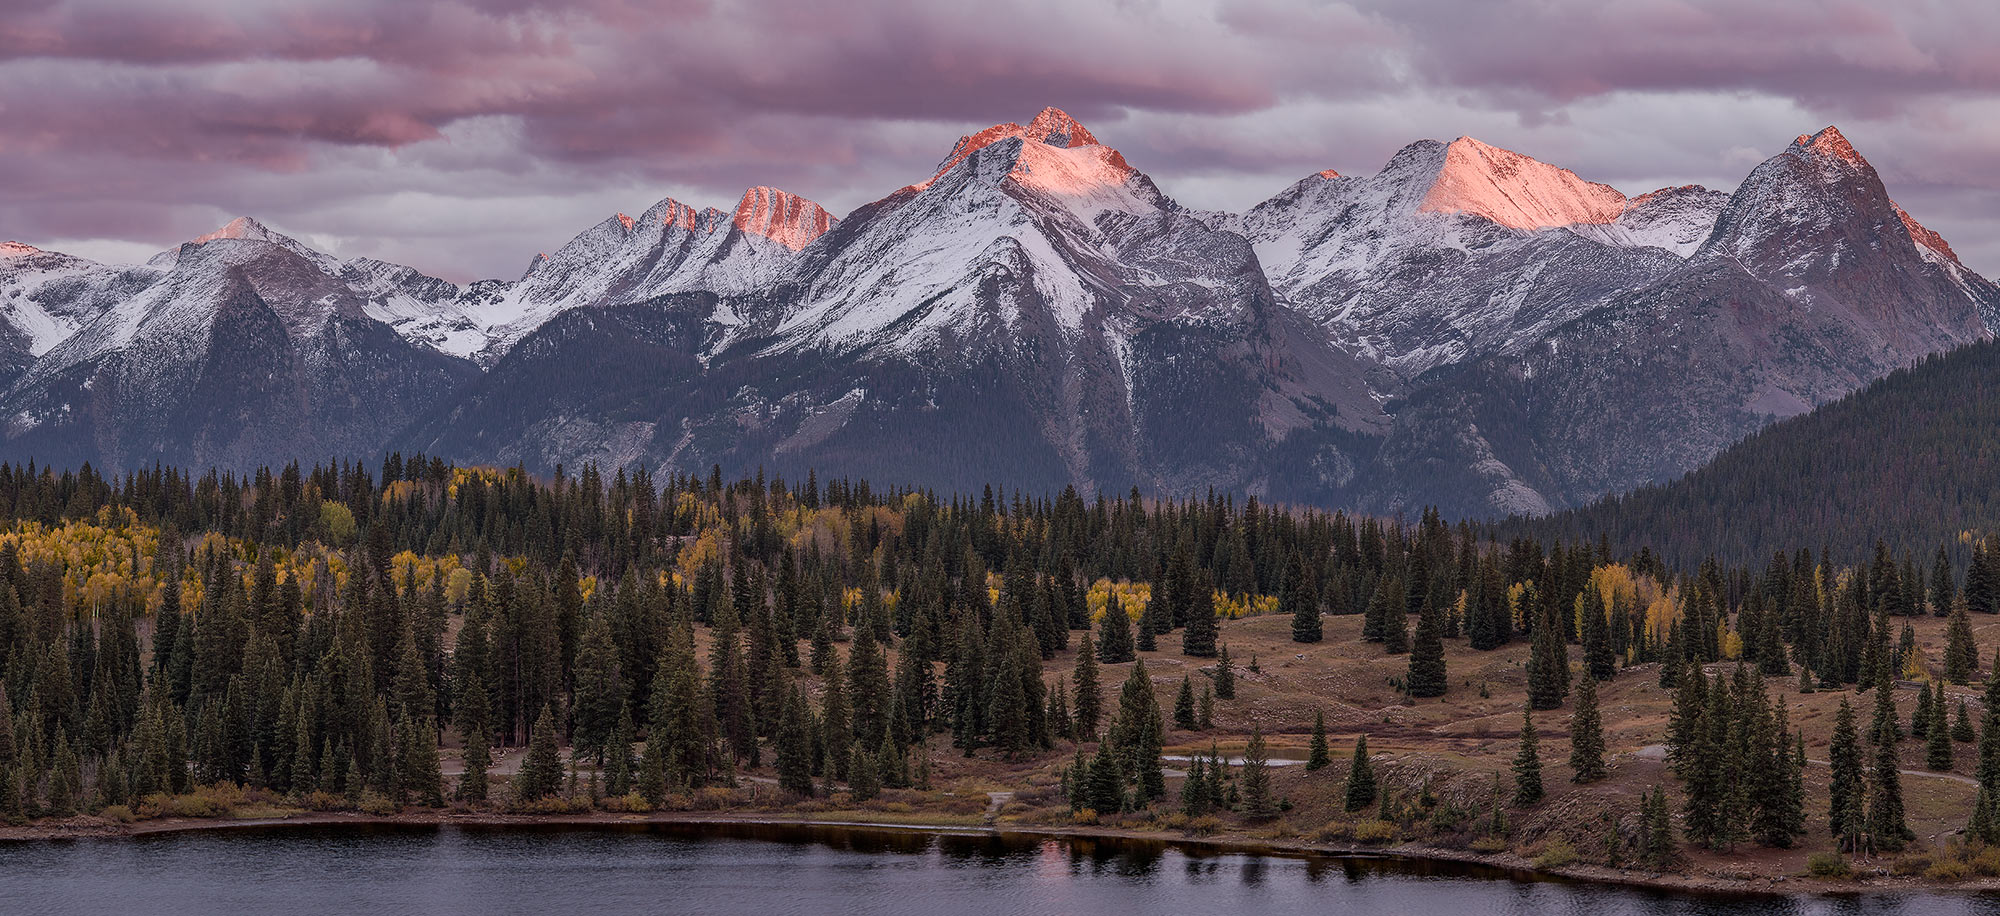 Colorado Landscape Photos